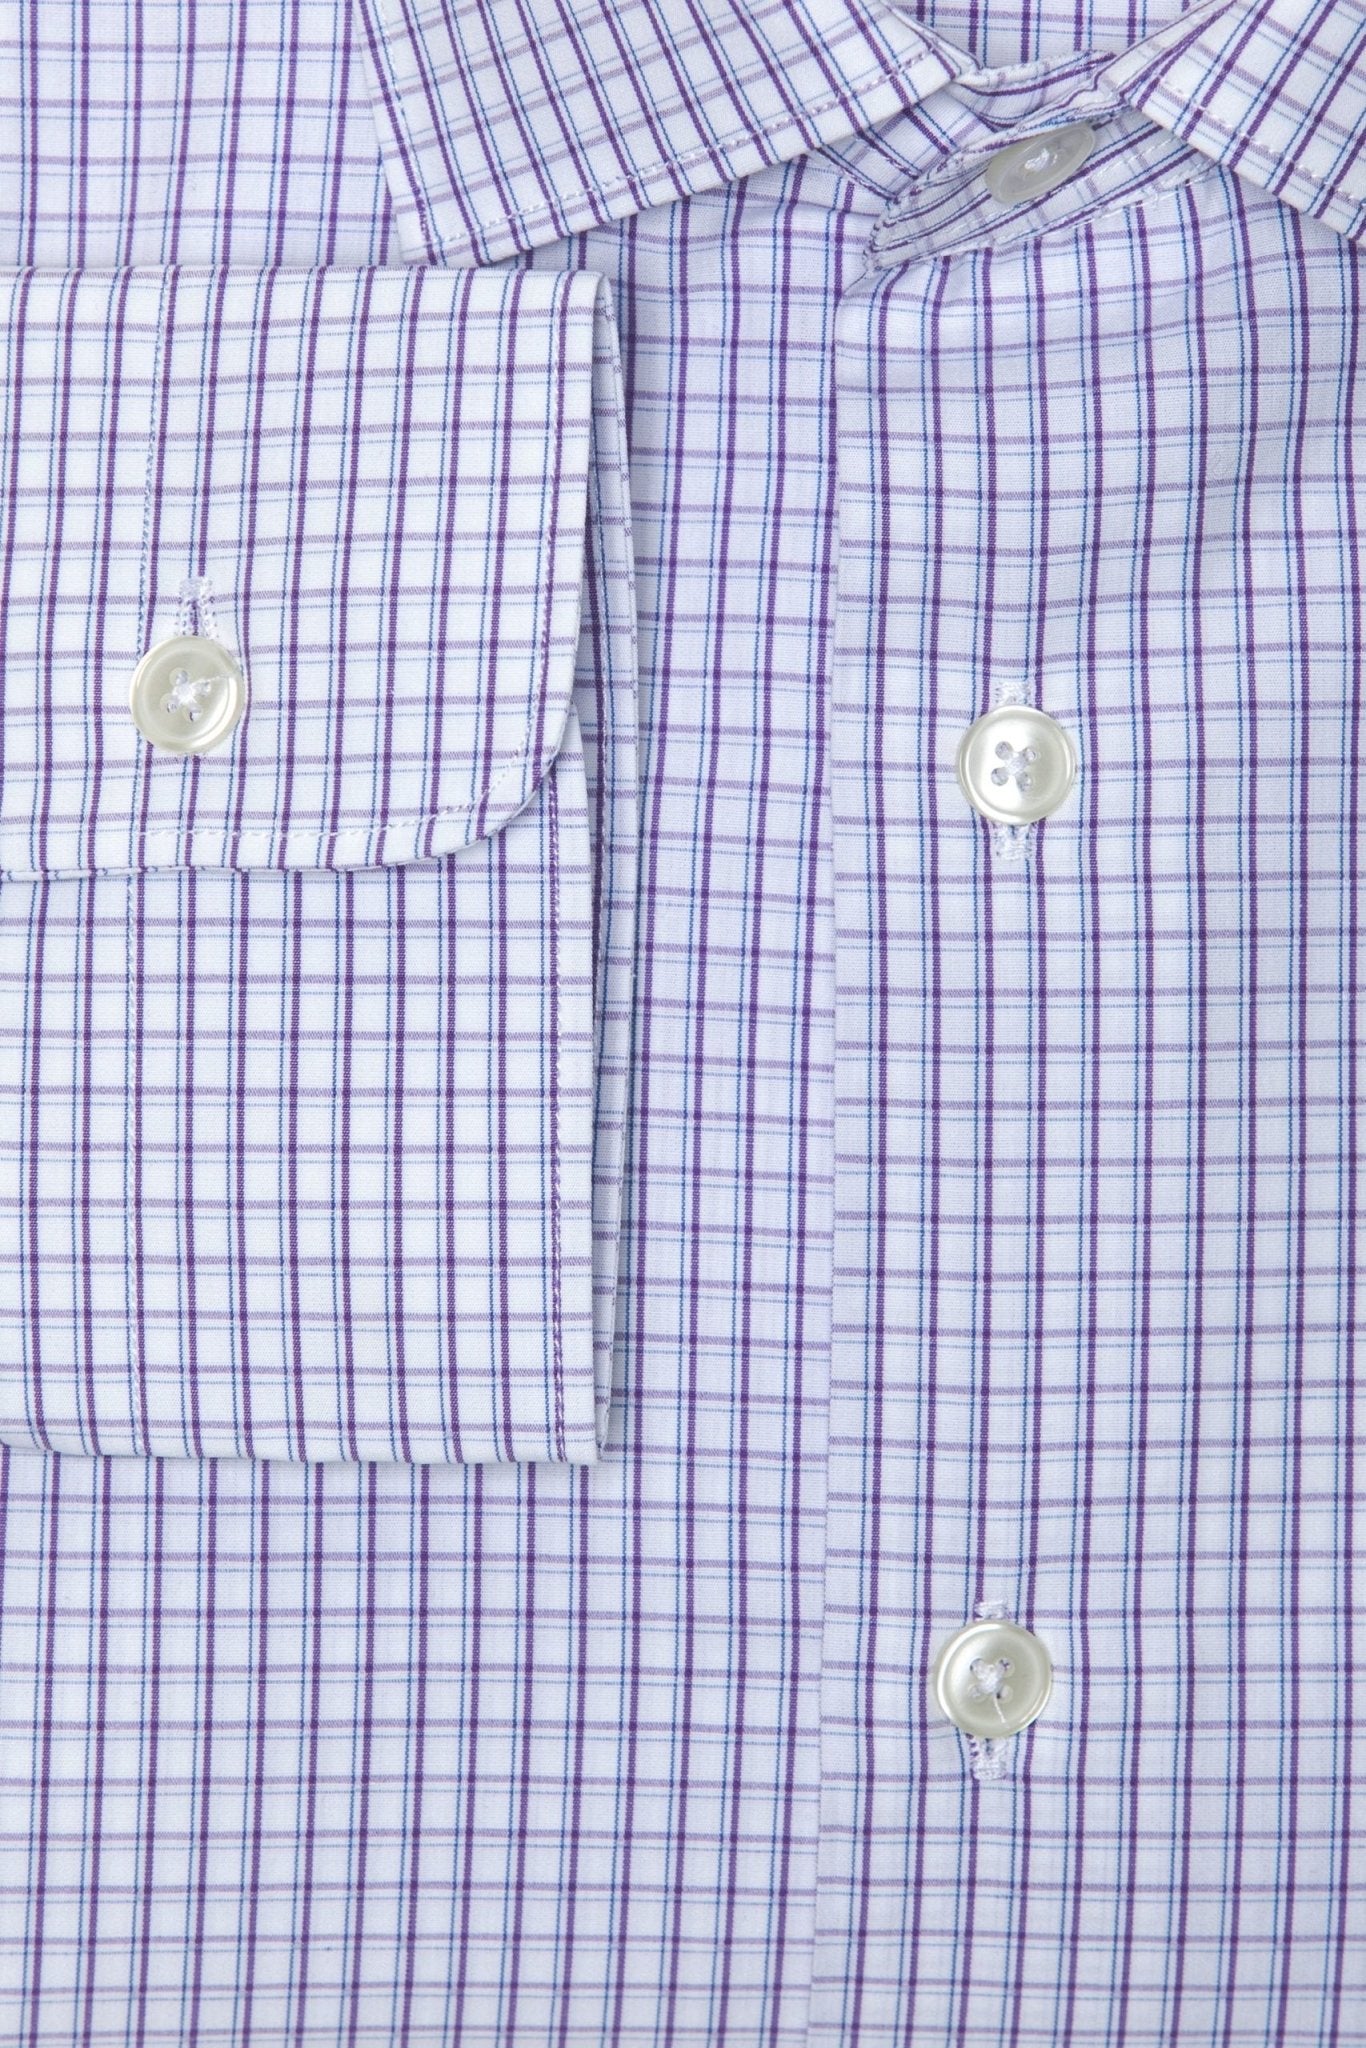 Robert Friedman Burgundy Cotton Shirt - Fizigo